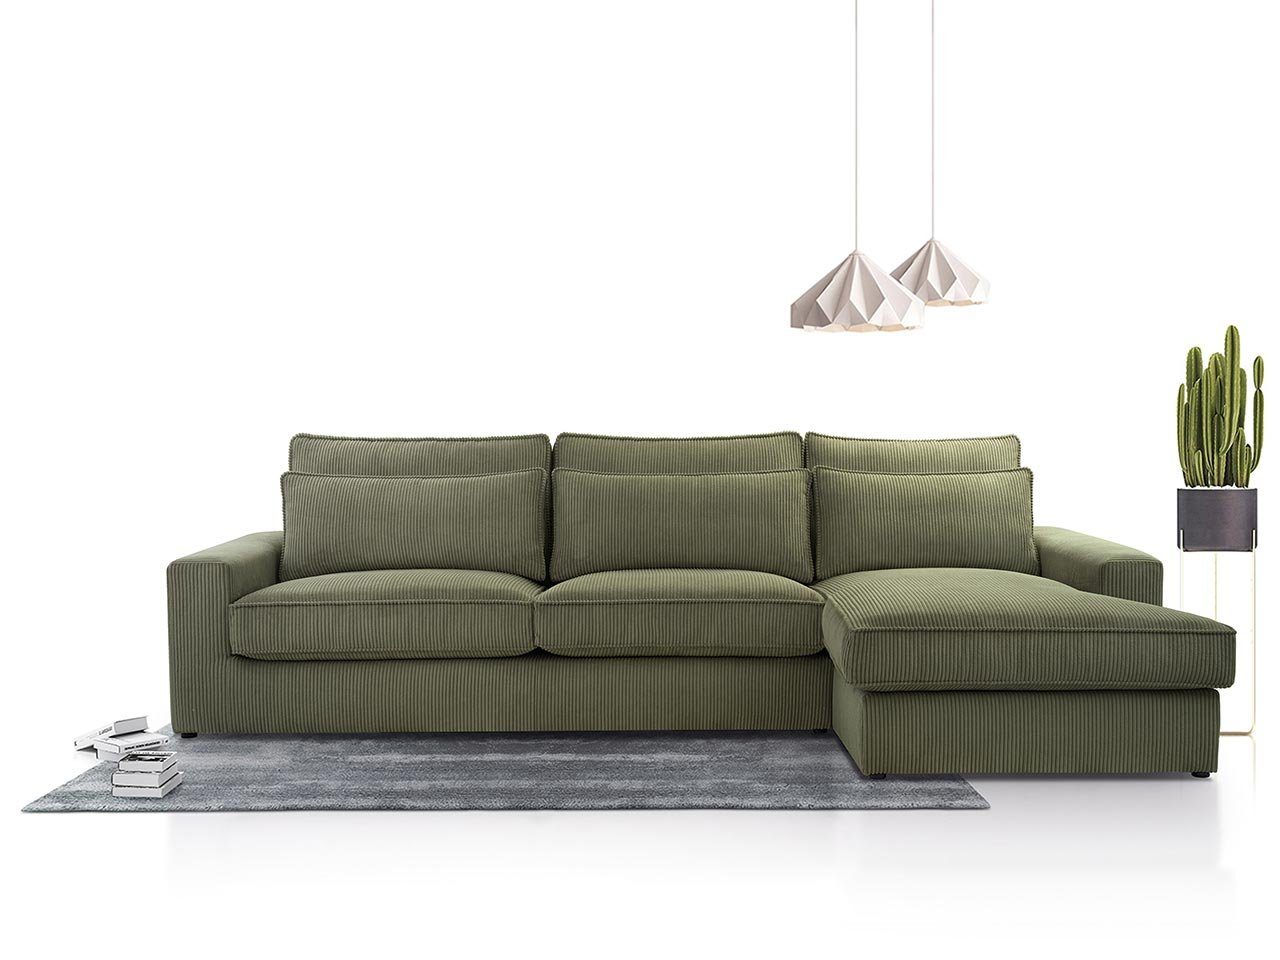 MKS MÖBEL Ecksofa CANES, L - Form Couch, mit lose Kissen, modern Ecksofa Grün Lincoln